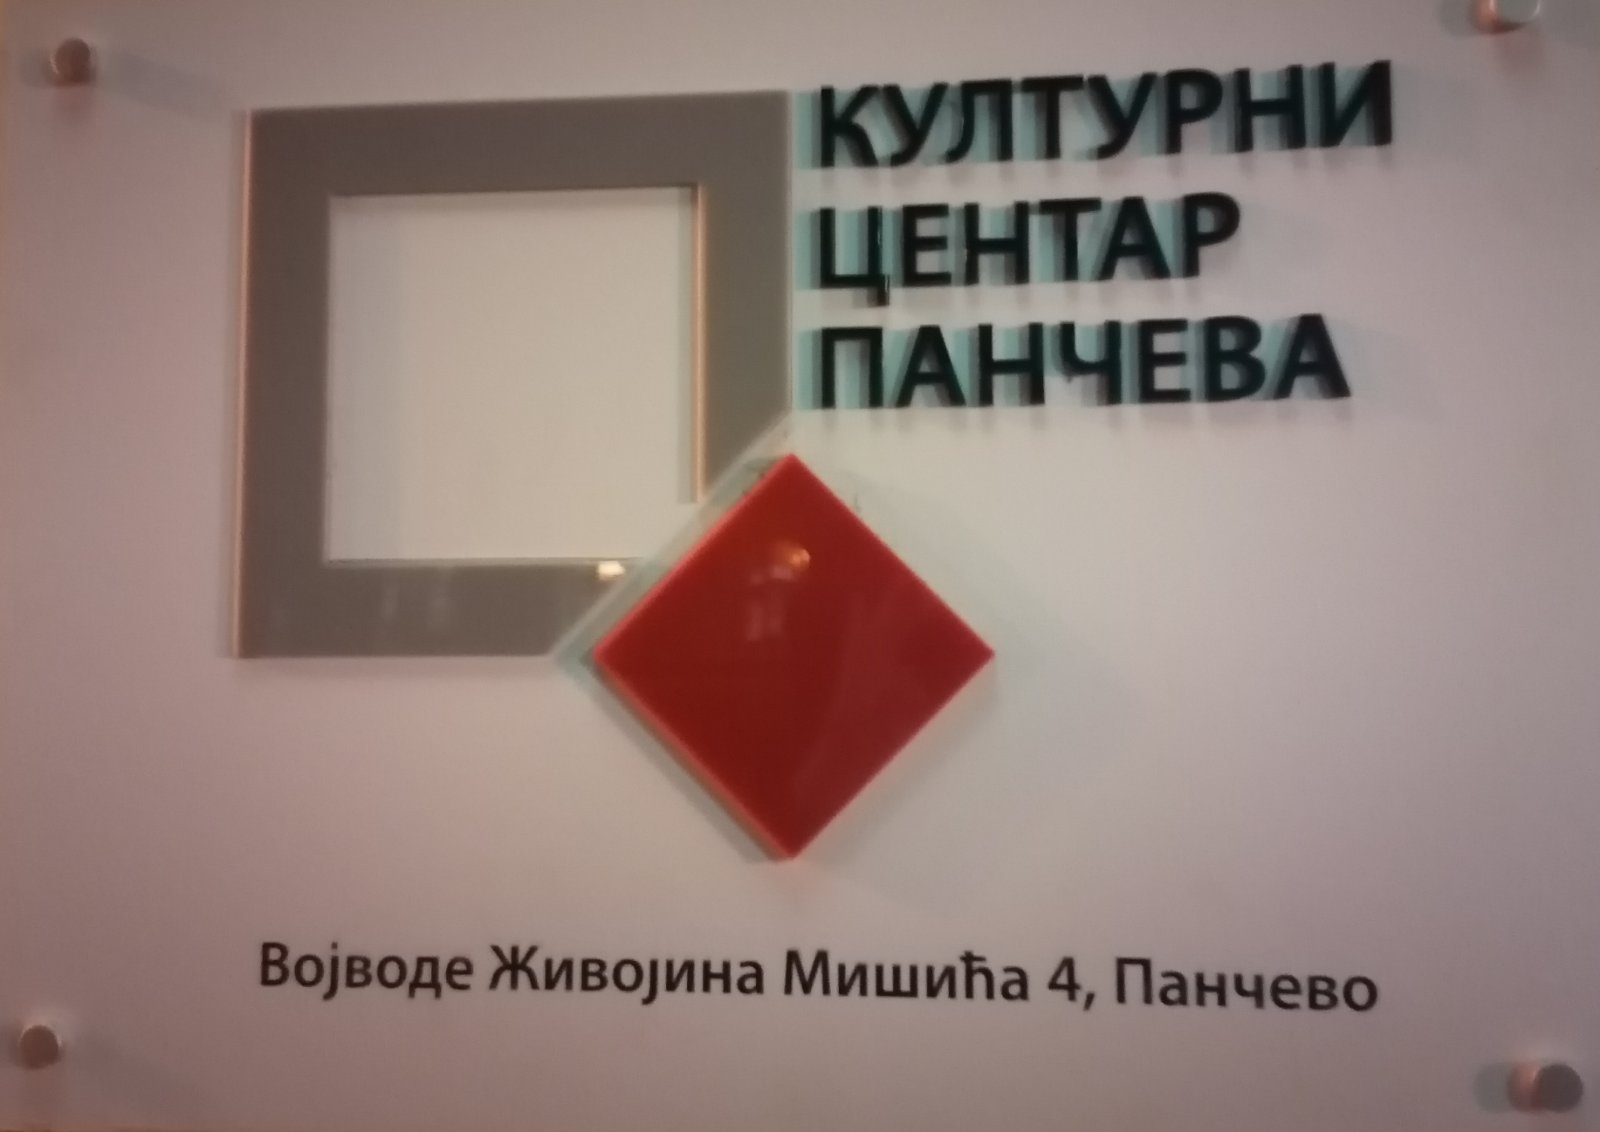 Otvorena izložba “Nove akvizicije 2022” u Kulturnom centru Pančeva